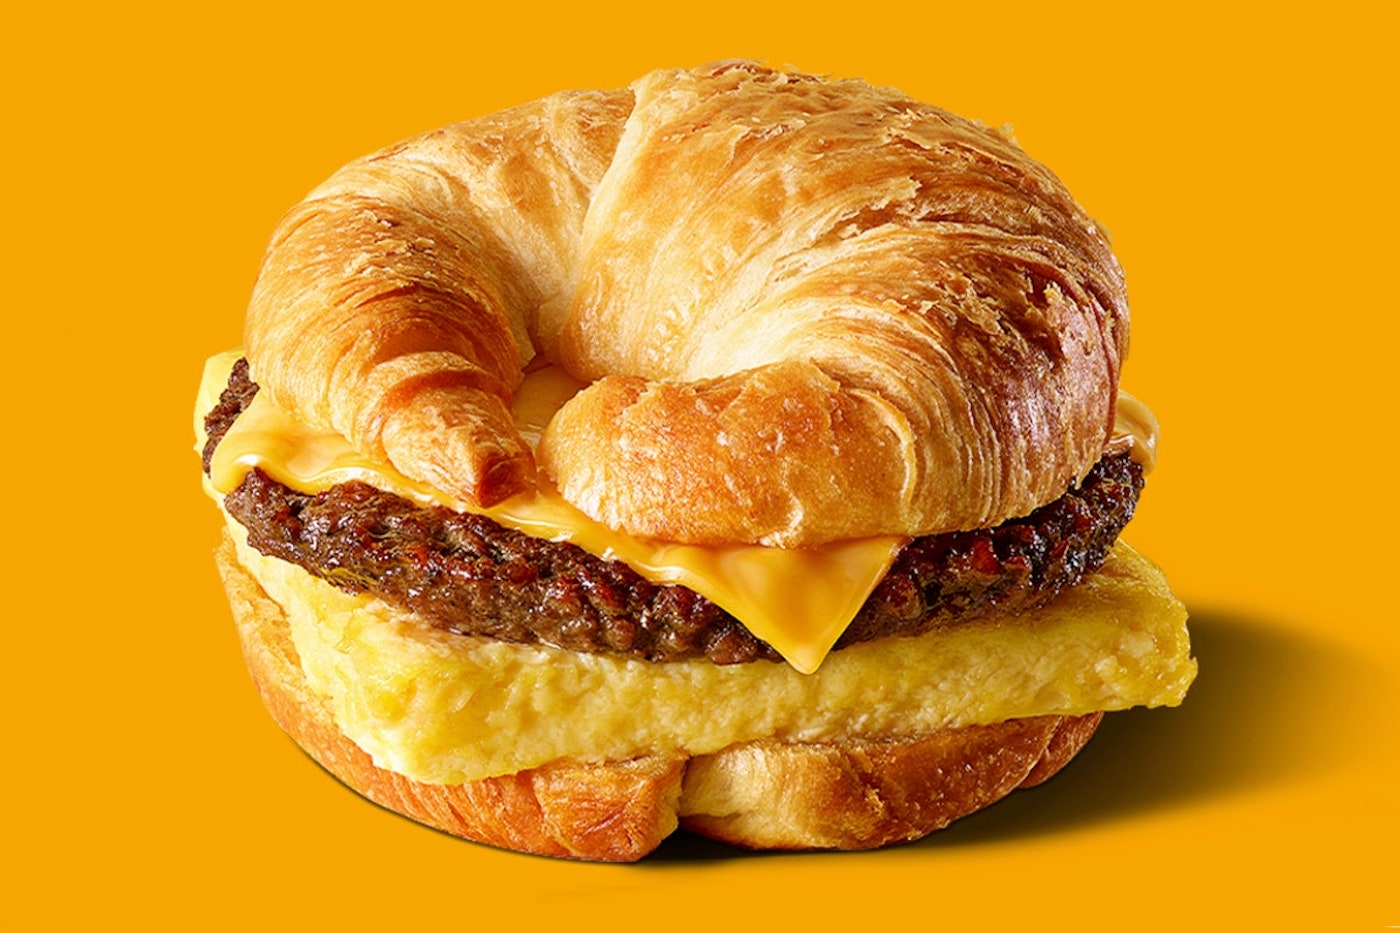 Croissan'wich : aux États-Unis Burger King dévoile un burger croissant